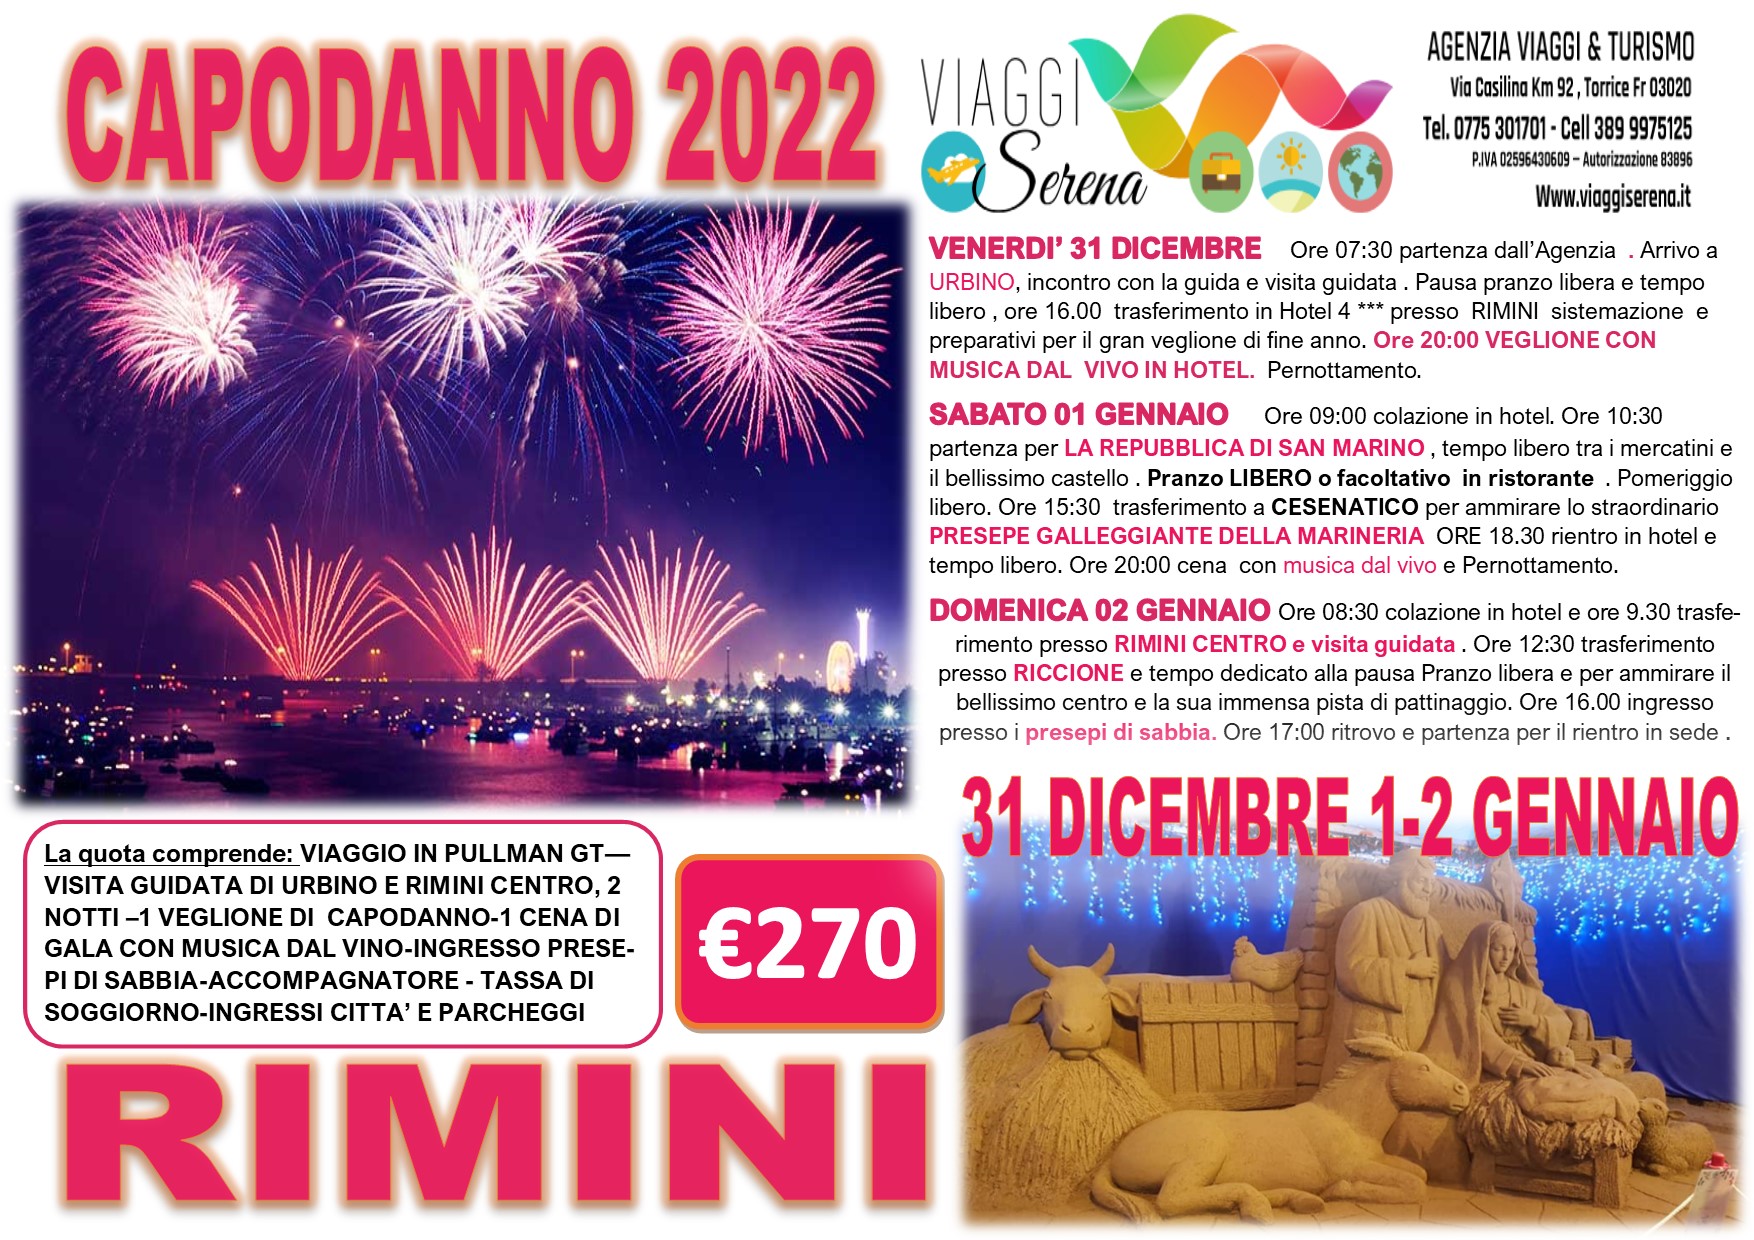 Viaggi Natalizi:  Capodanno RIMINI, San Marino, Cesenatico & Riccione 31 Dicembre -1-2 Gennaio € 270,00